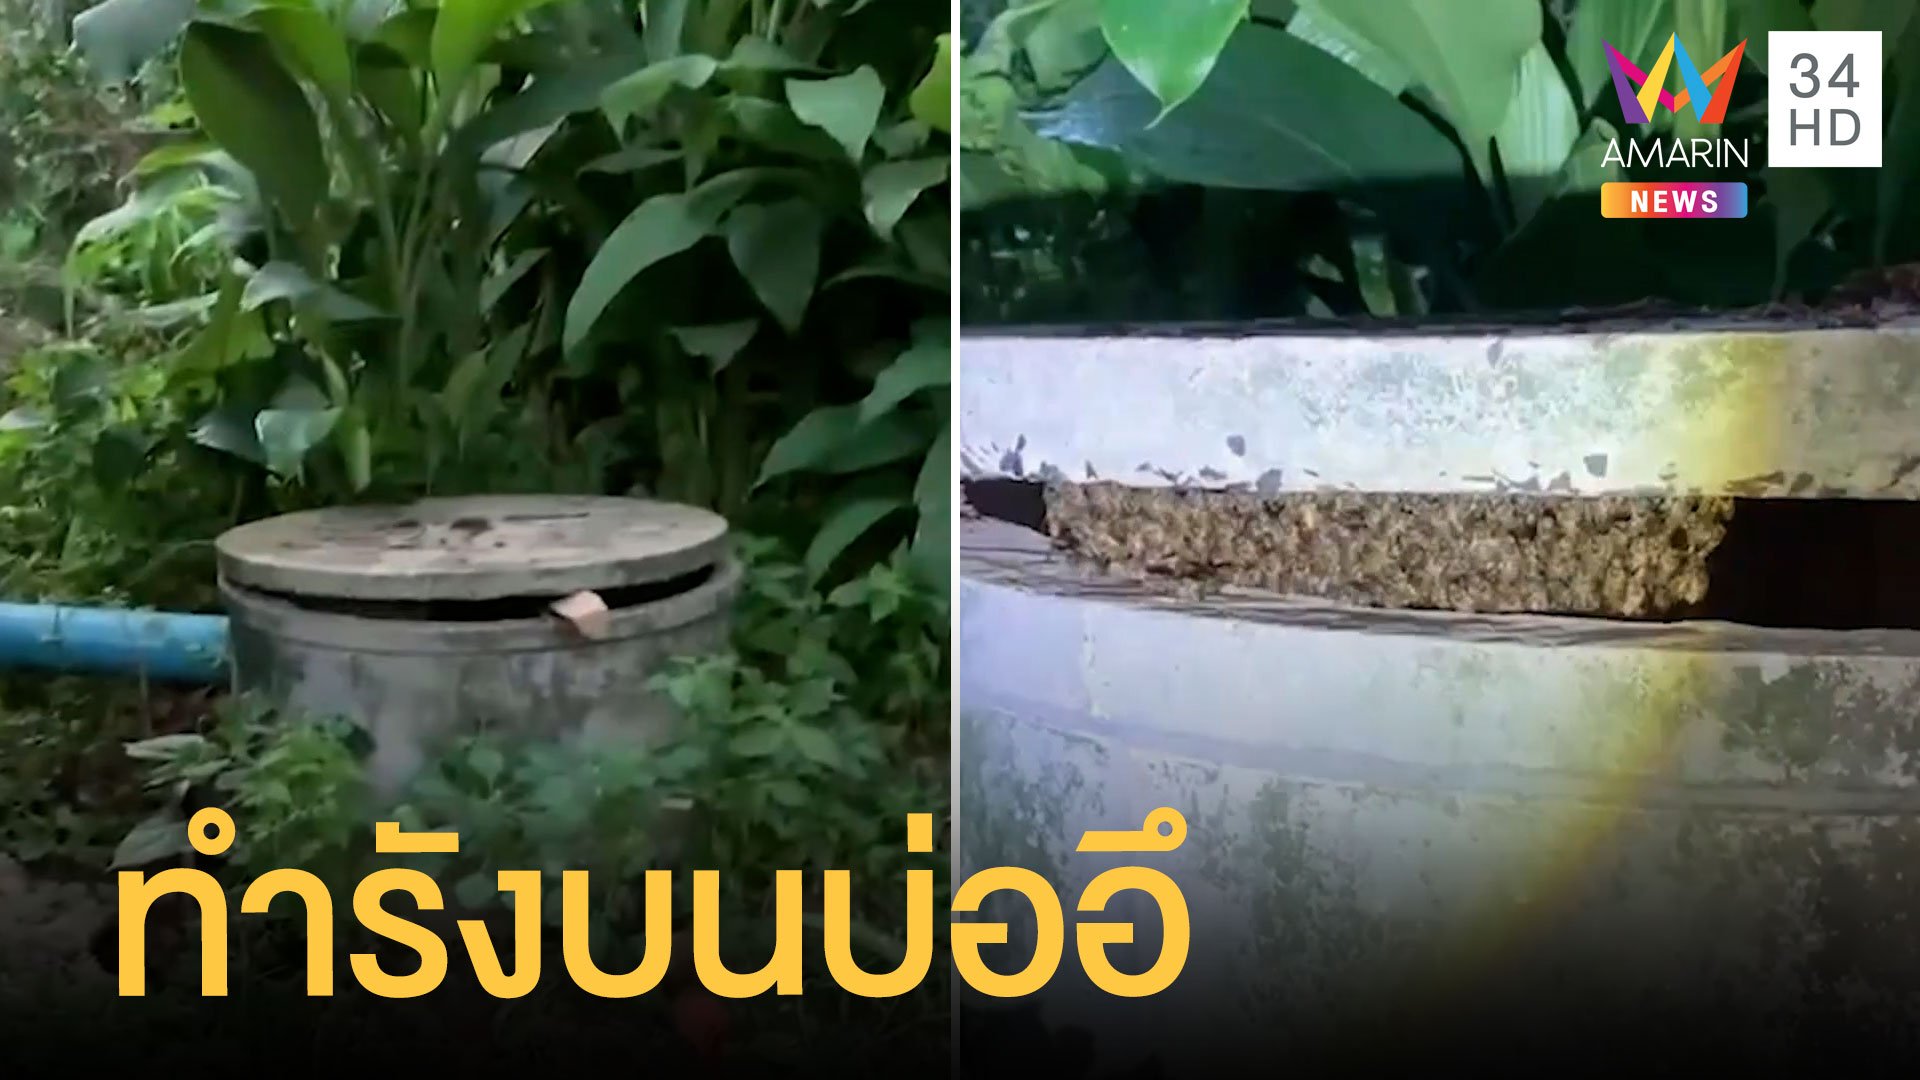 ผึ้งทำรังในบ่ออึ ป้าแซวไม่กล้าเก็บน้ำหวานเลย | ข่าวอรุณอมรินทร์ | 7 มิ.ย. 65 | AMARIN TVHD34